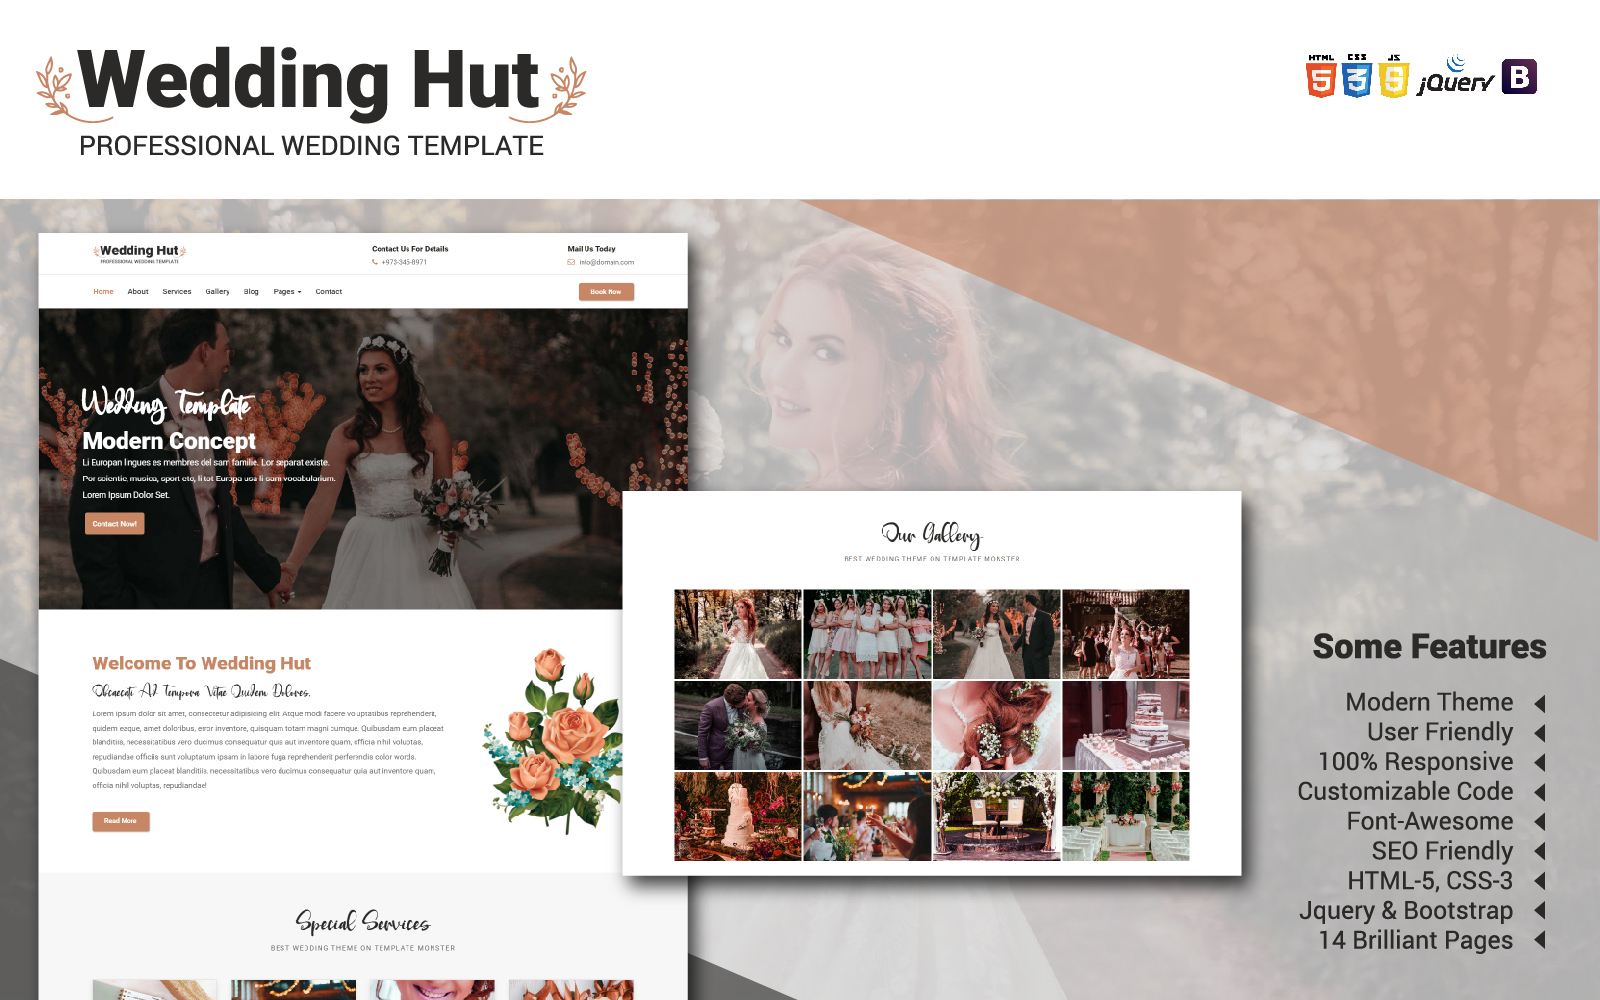 Wedding Hut Website Template